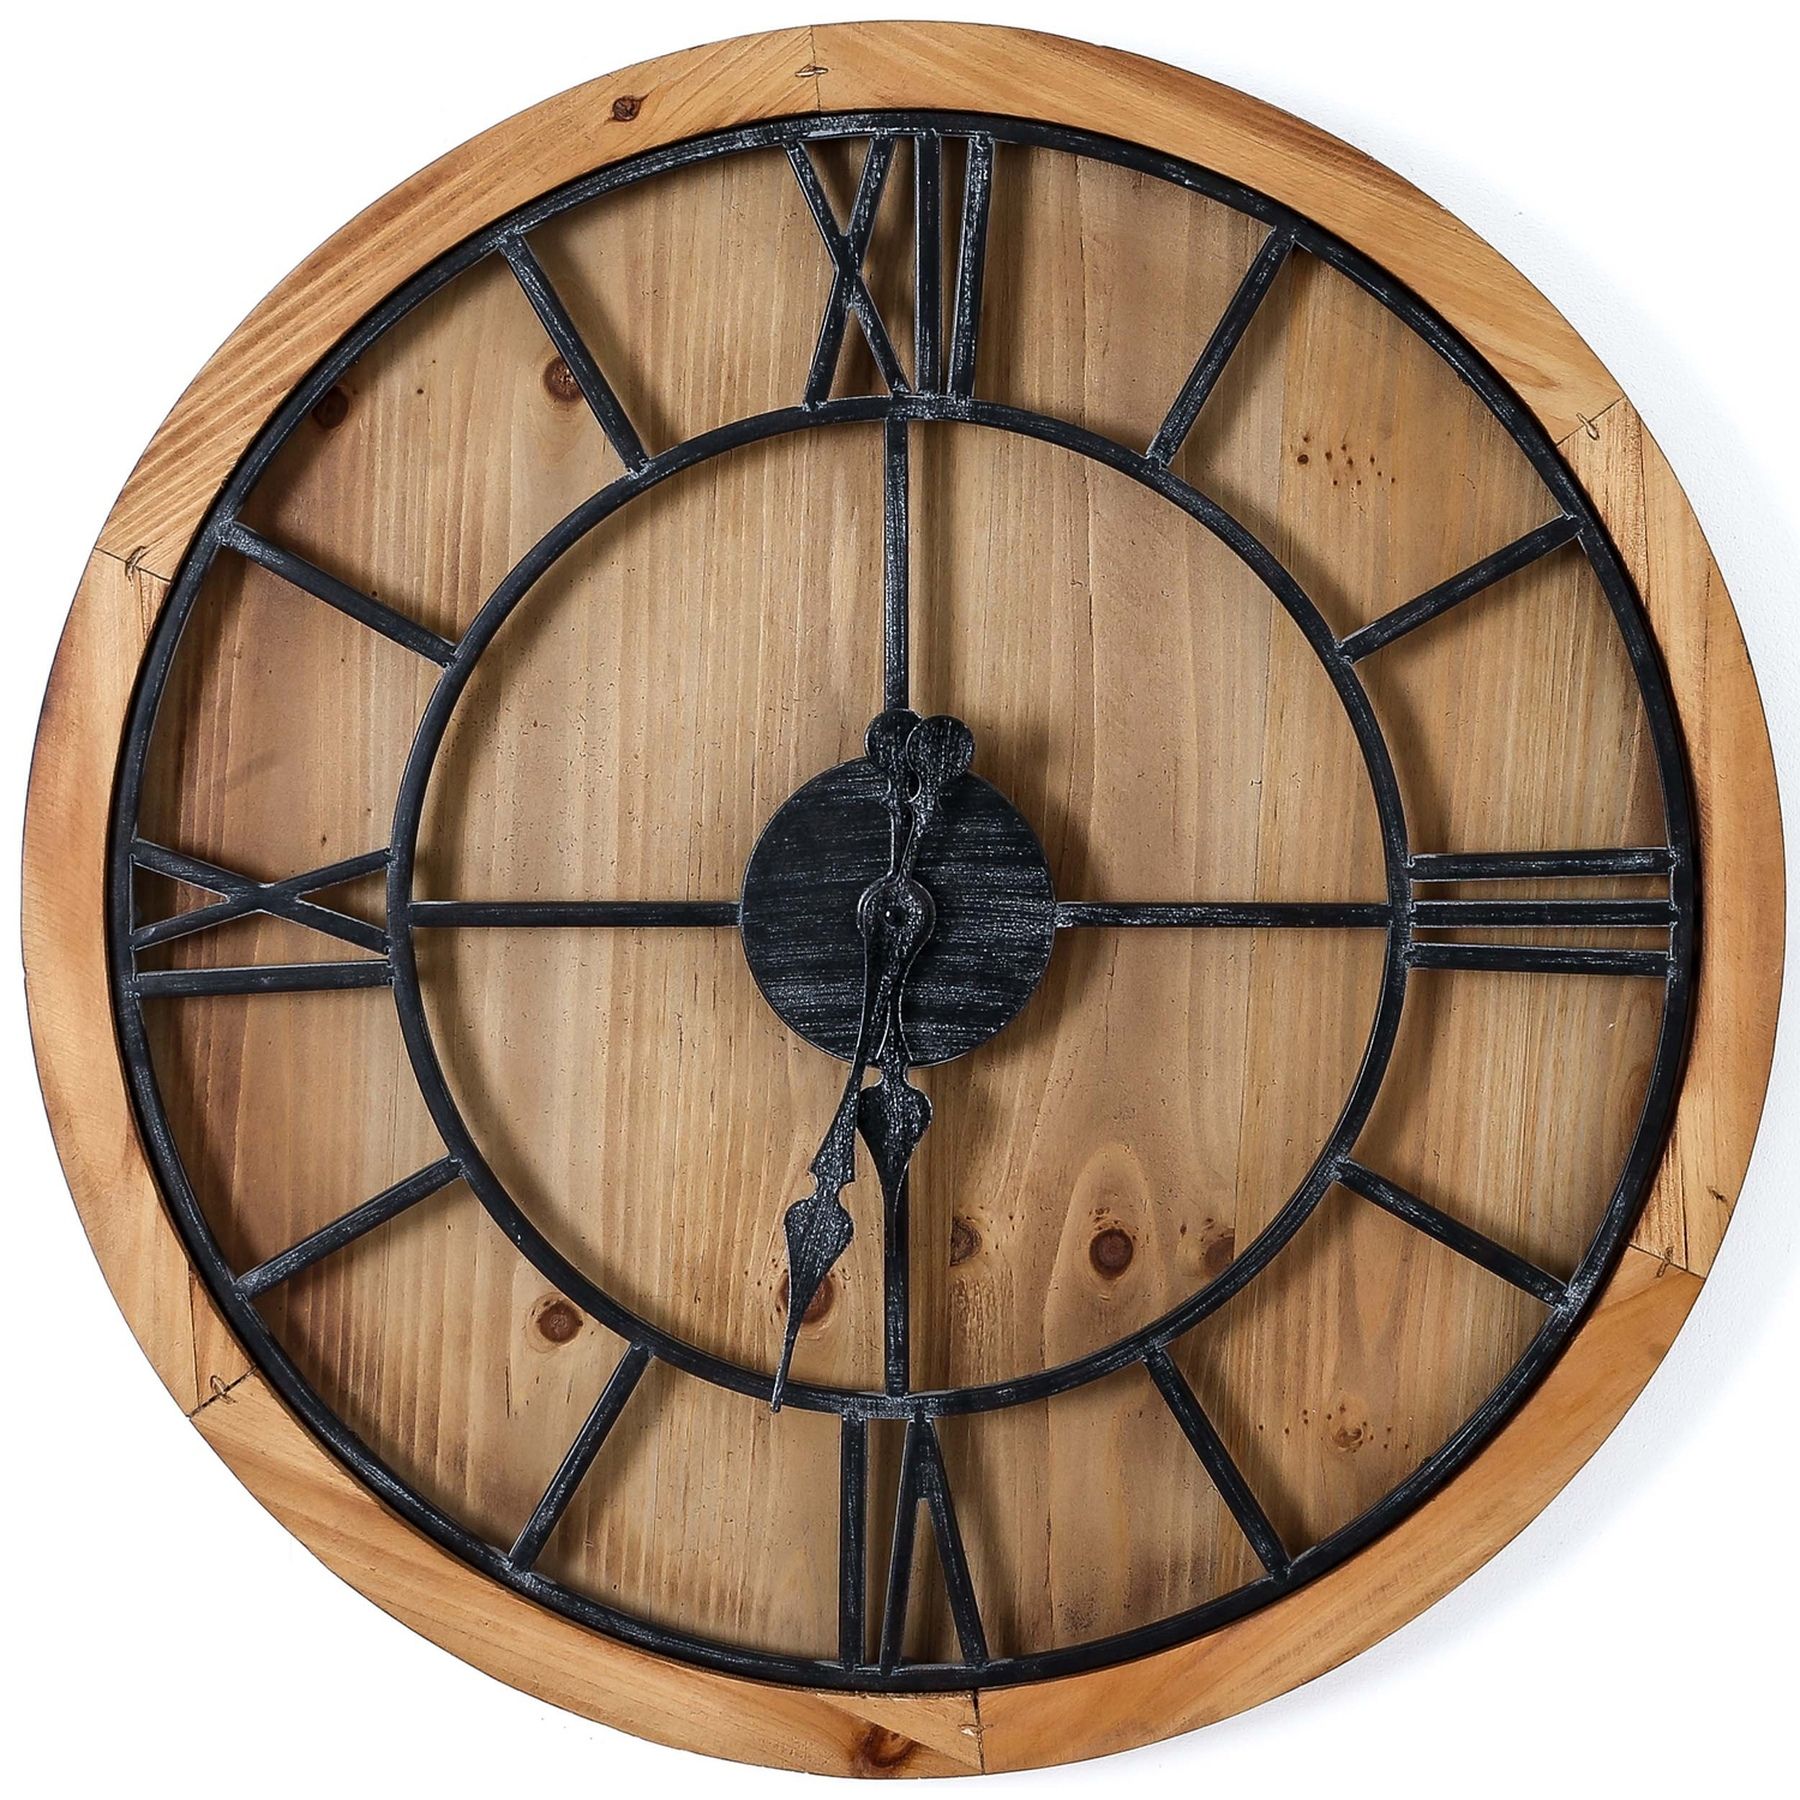 Williston Wooden Wall Clock - Image 1